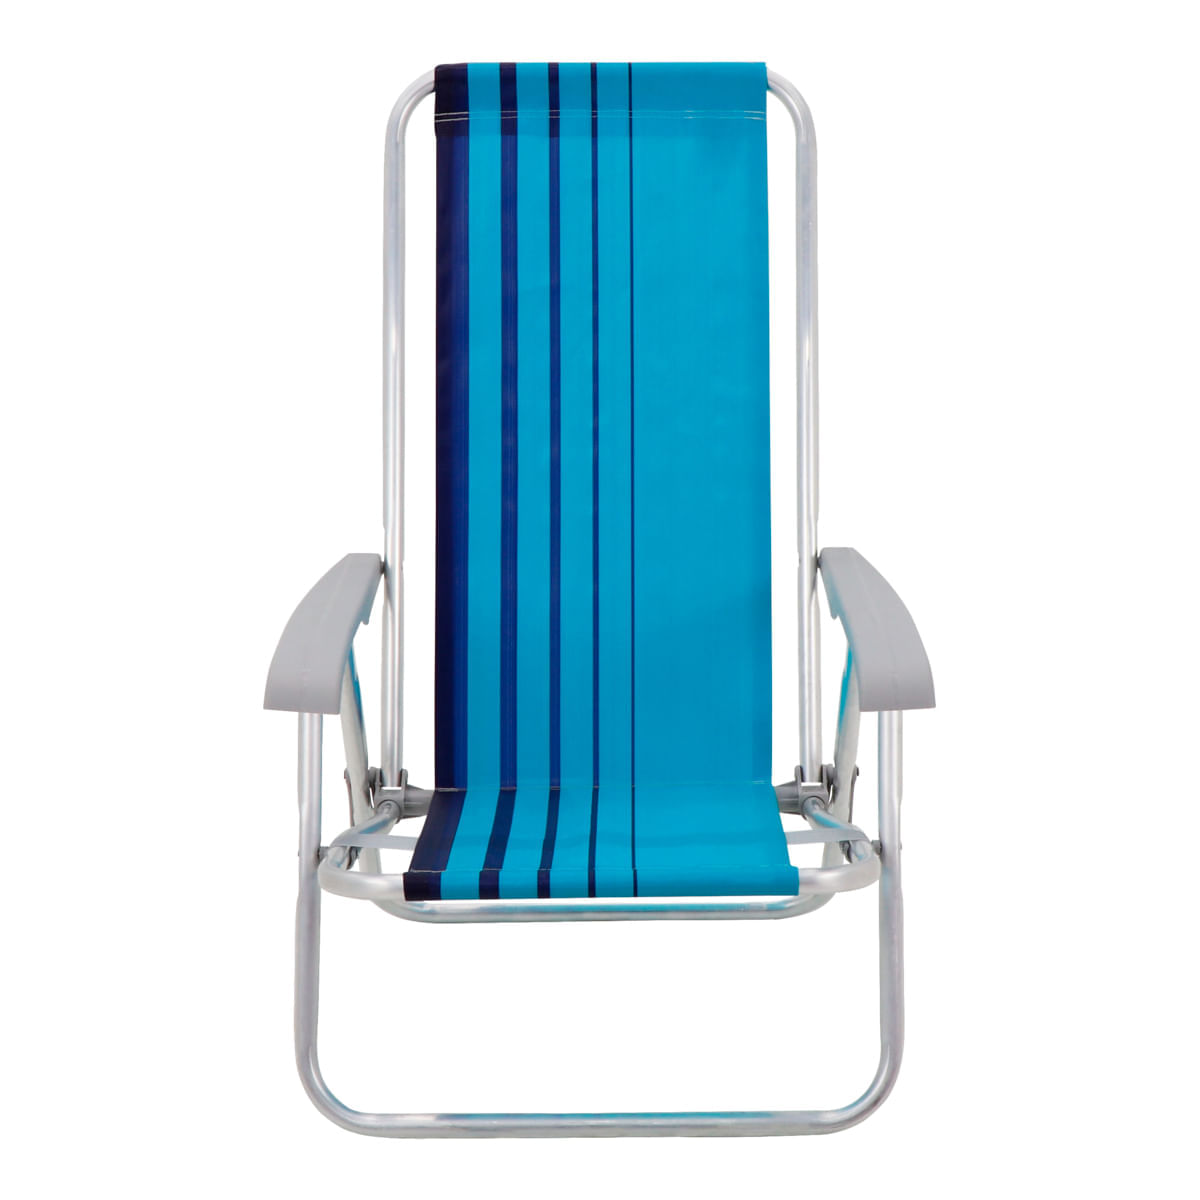 Cadeira de Praia Reclinável Tramontina Bali Baixa em Alumínio com Assento Azul